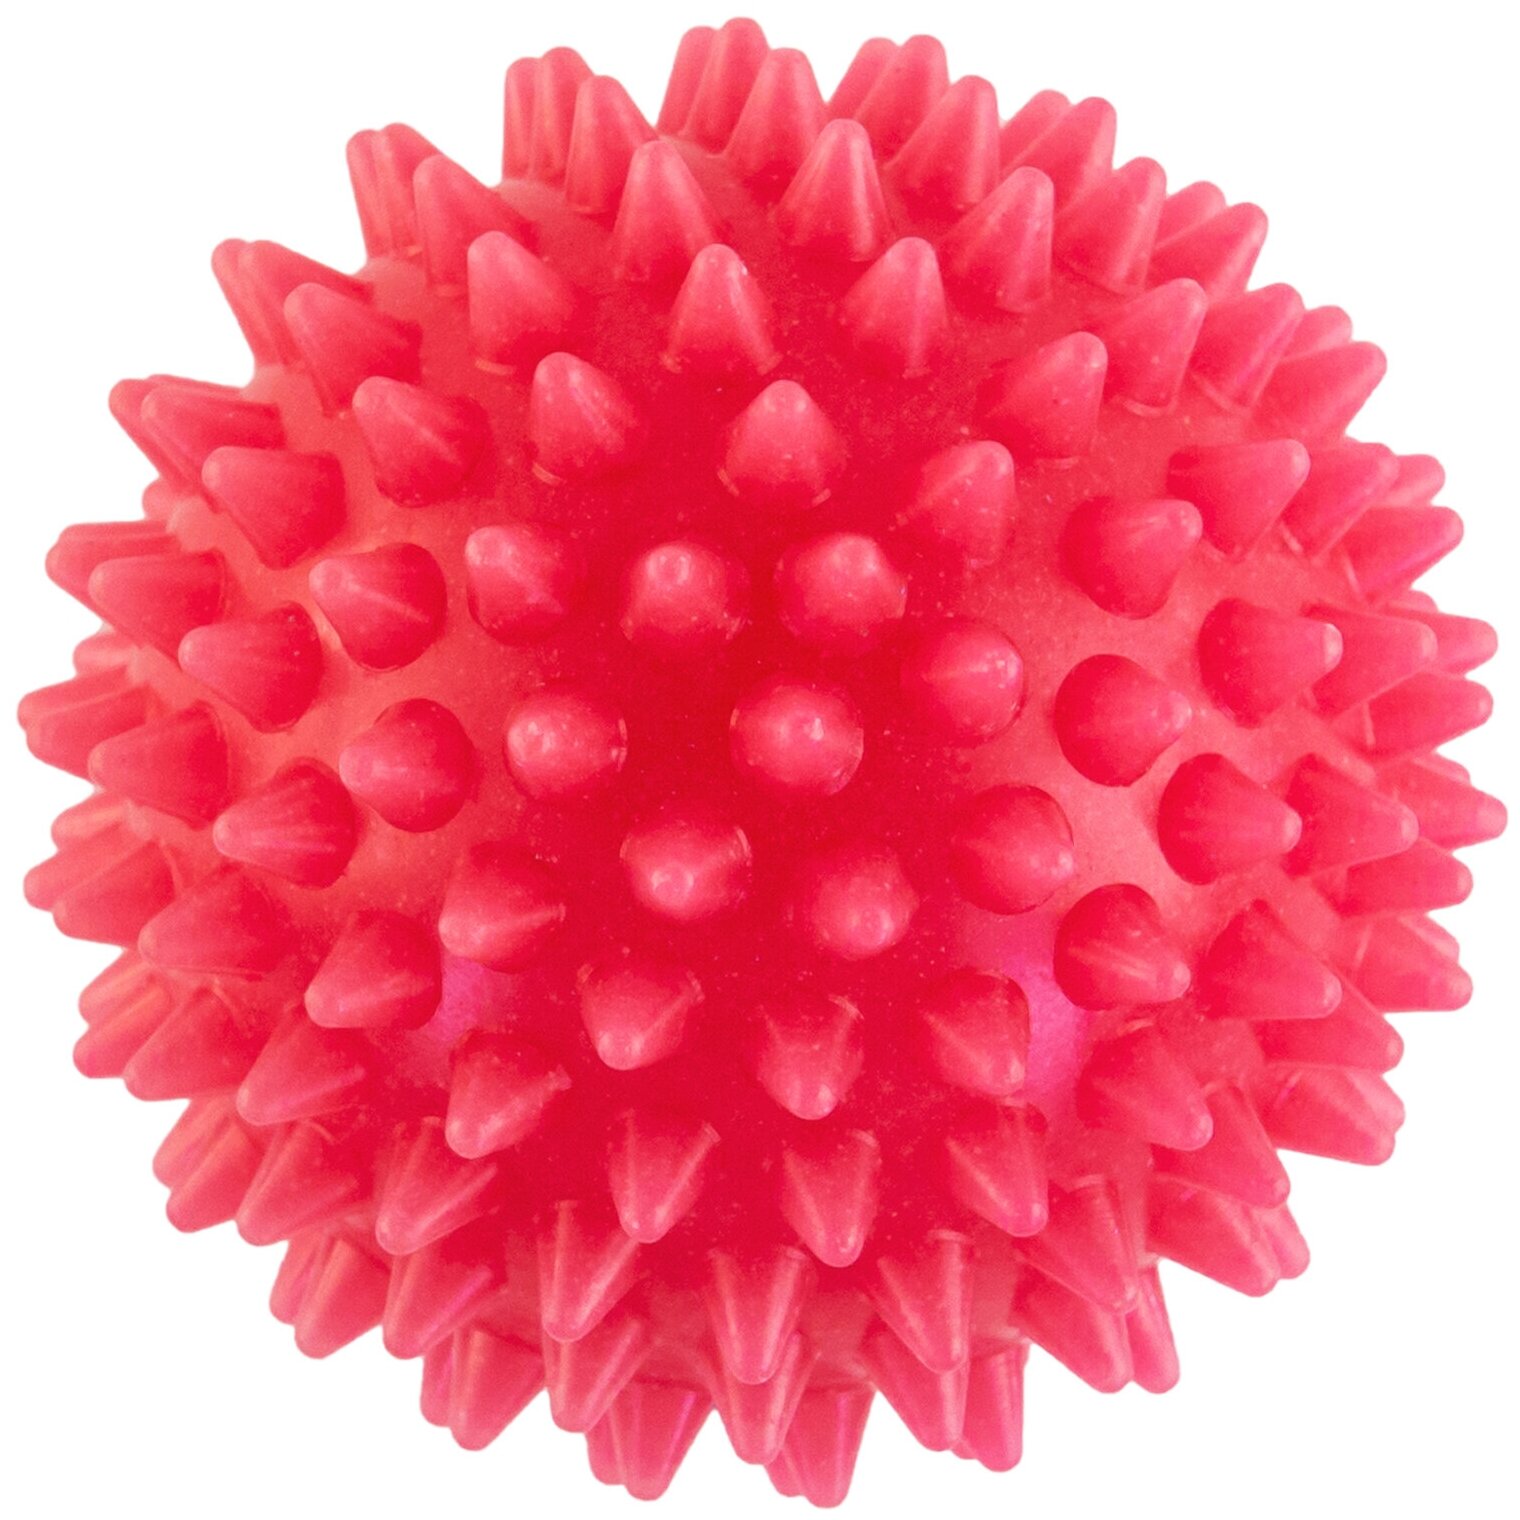 Массажный мяч 7 см, цвет красный